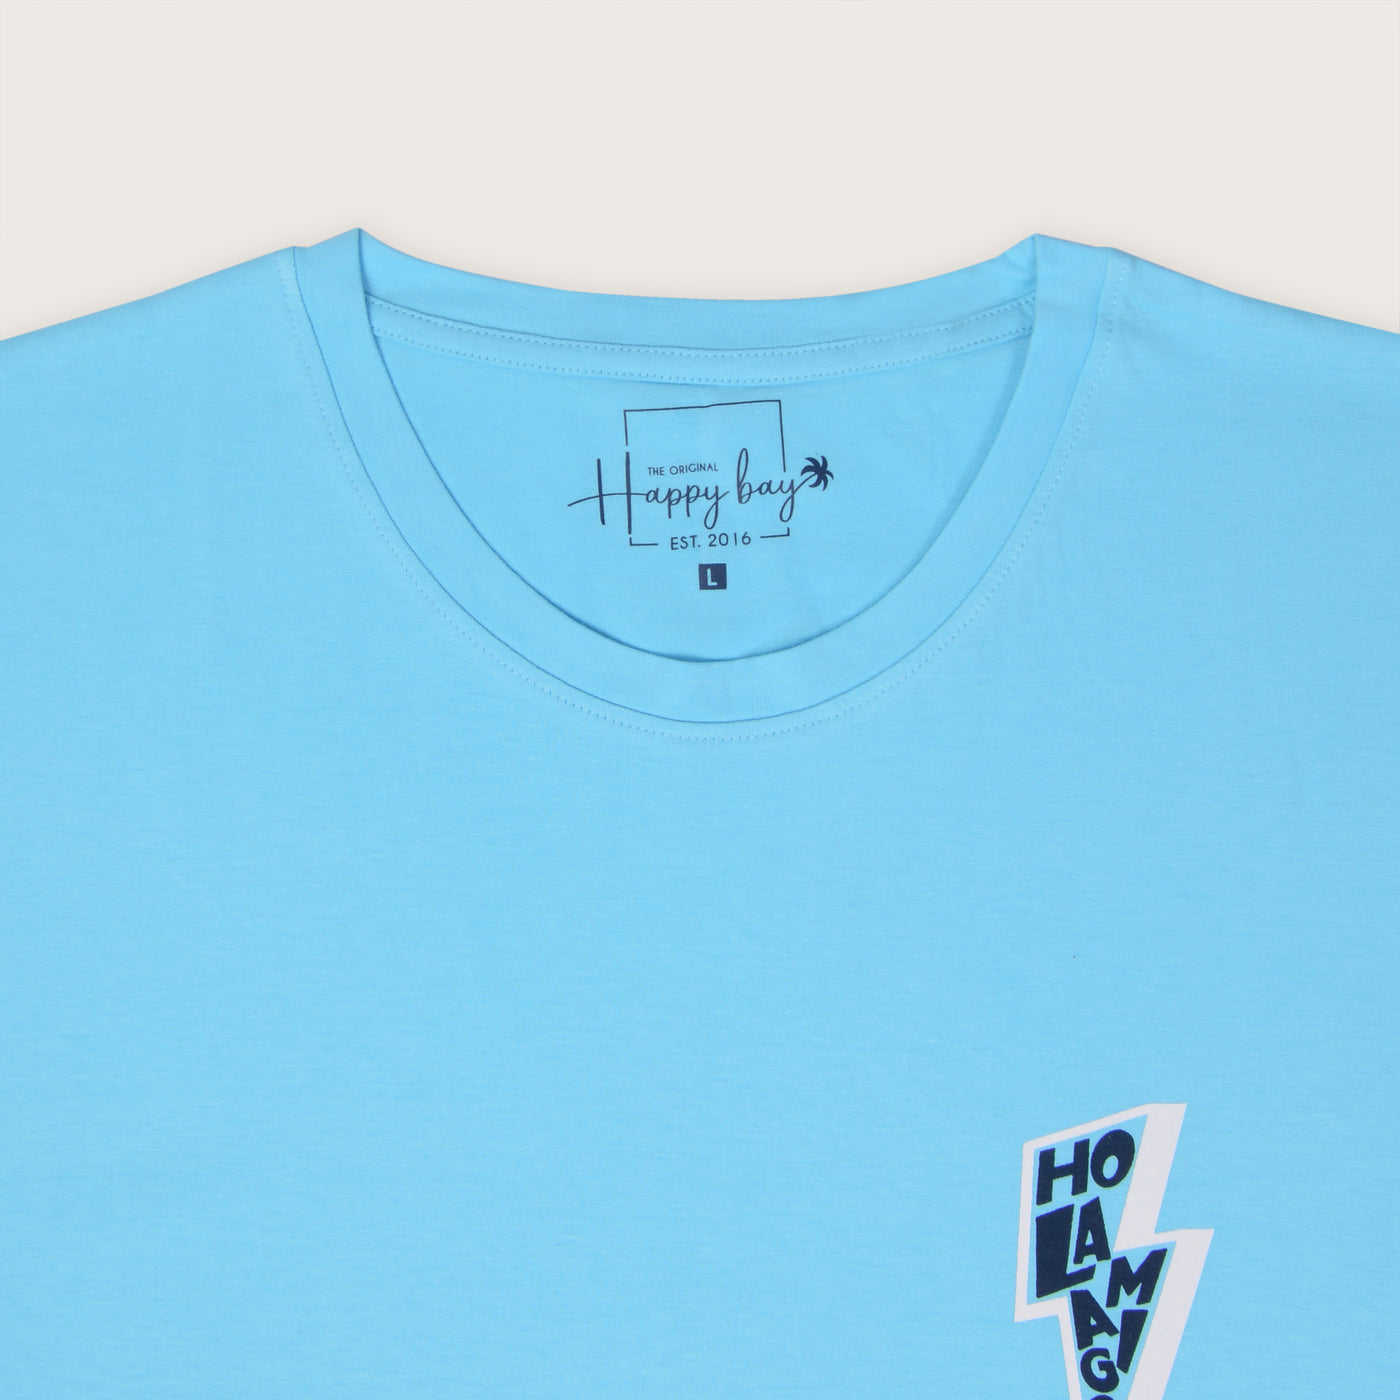 Buy now hola amigo t-shirt